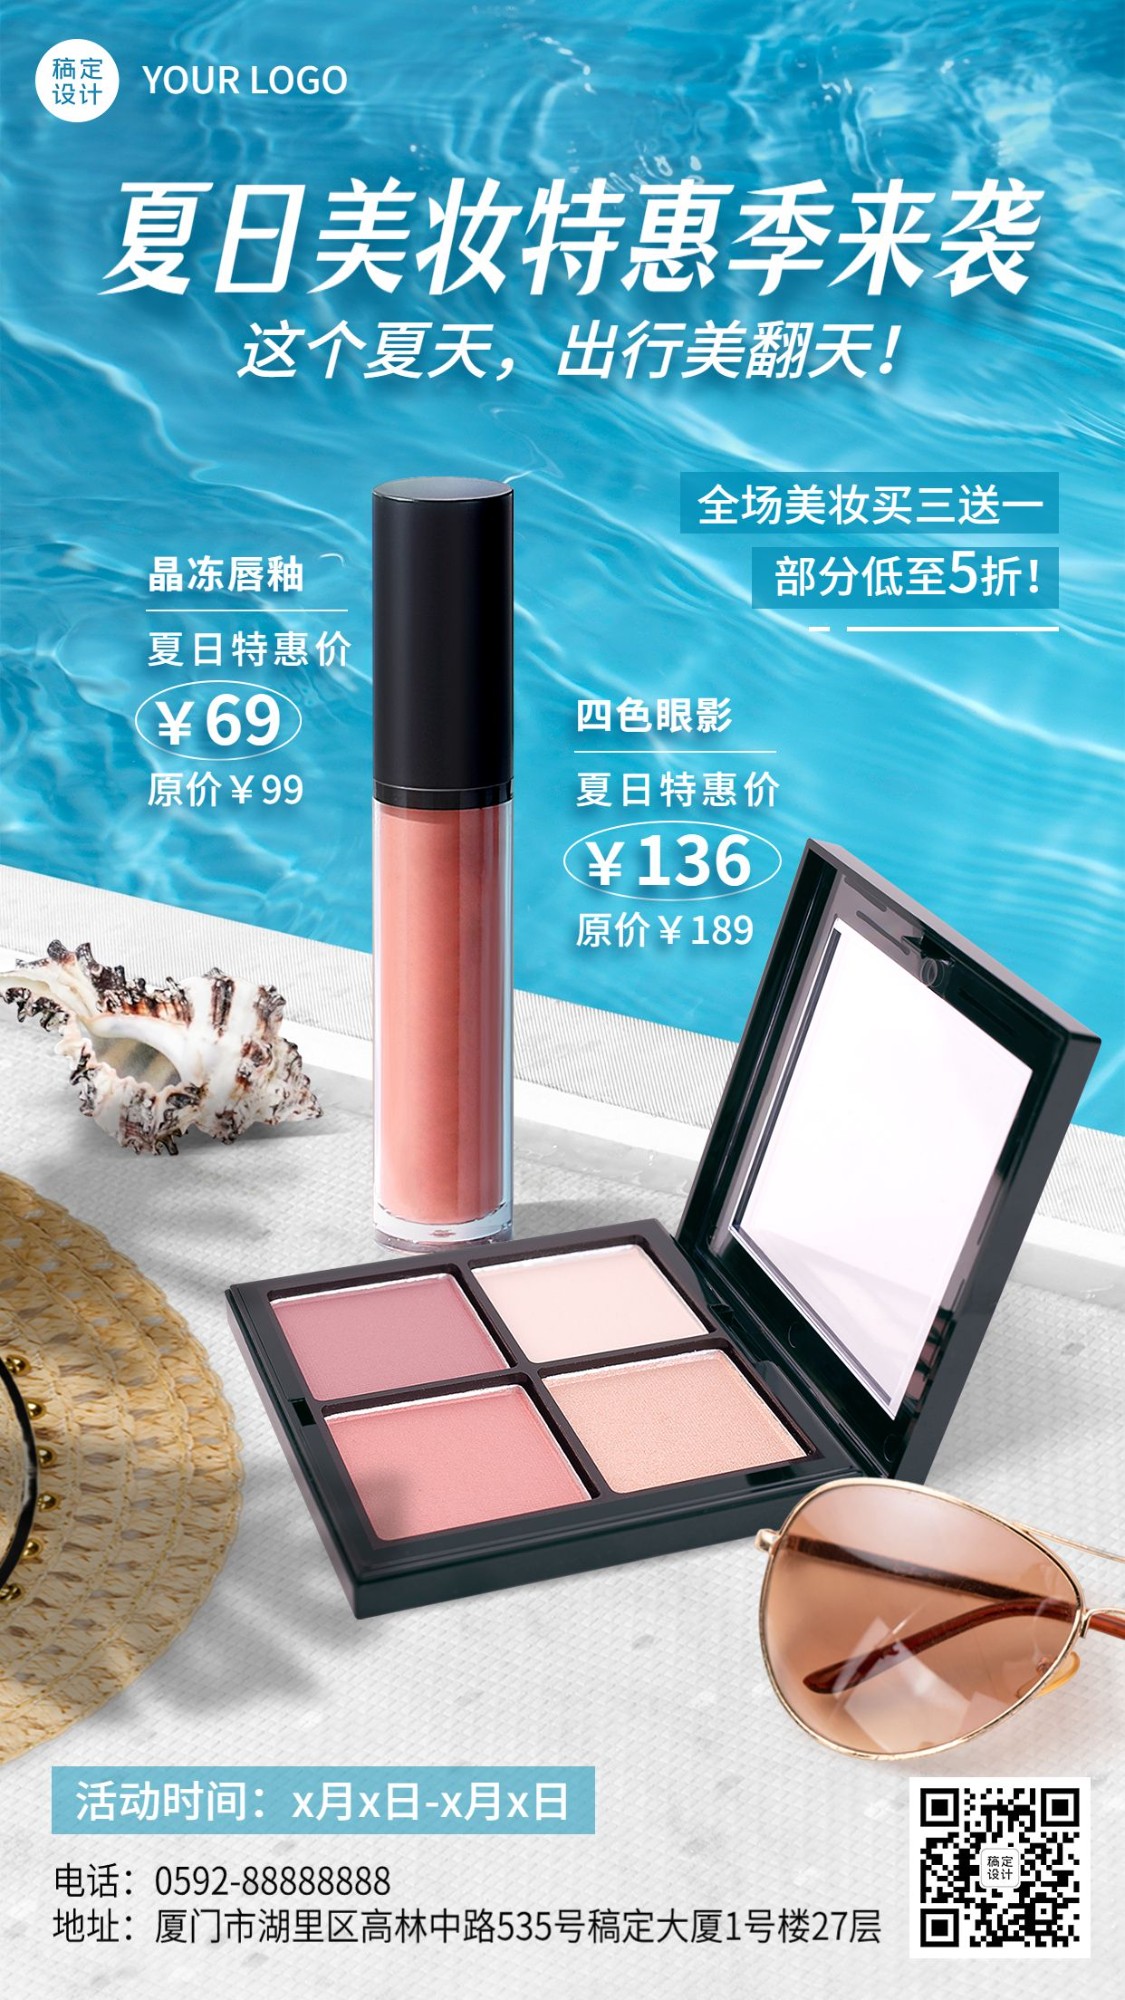 电商夏季促销美容美妆化妆品产品展示节点营销手机海报预览效果